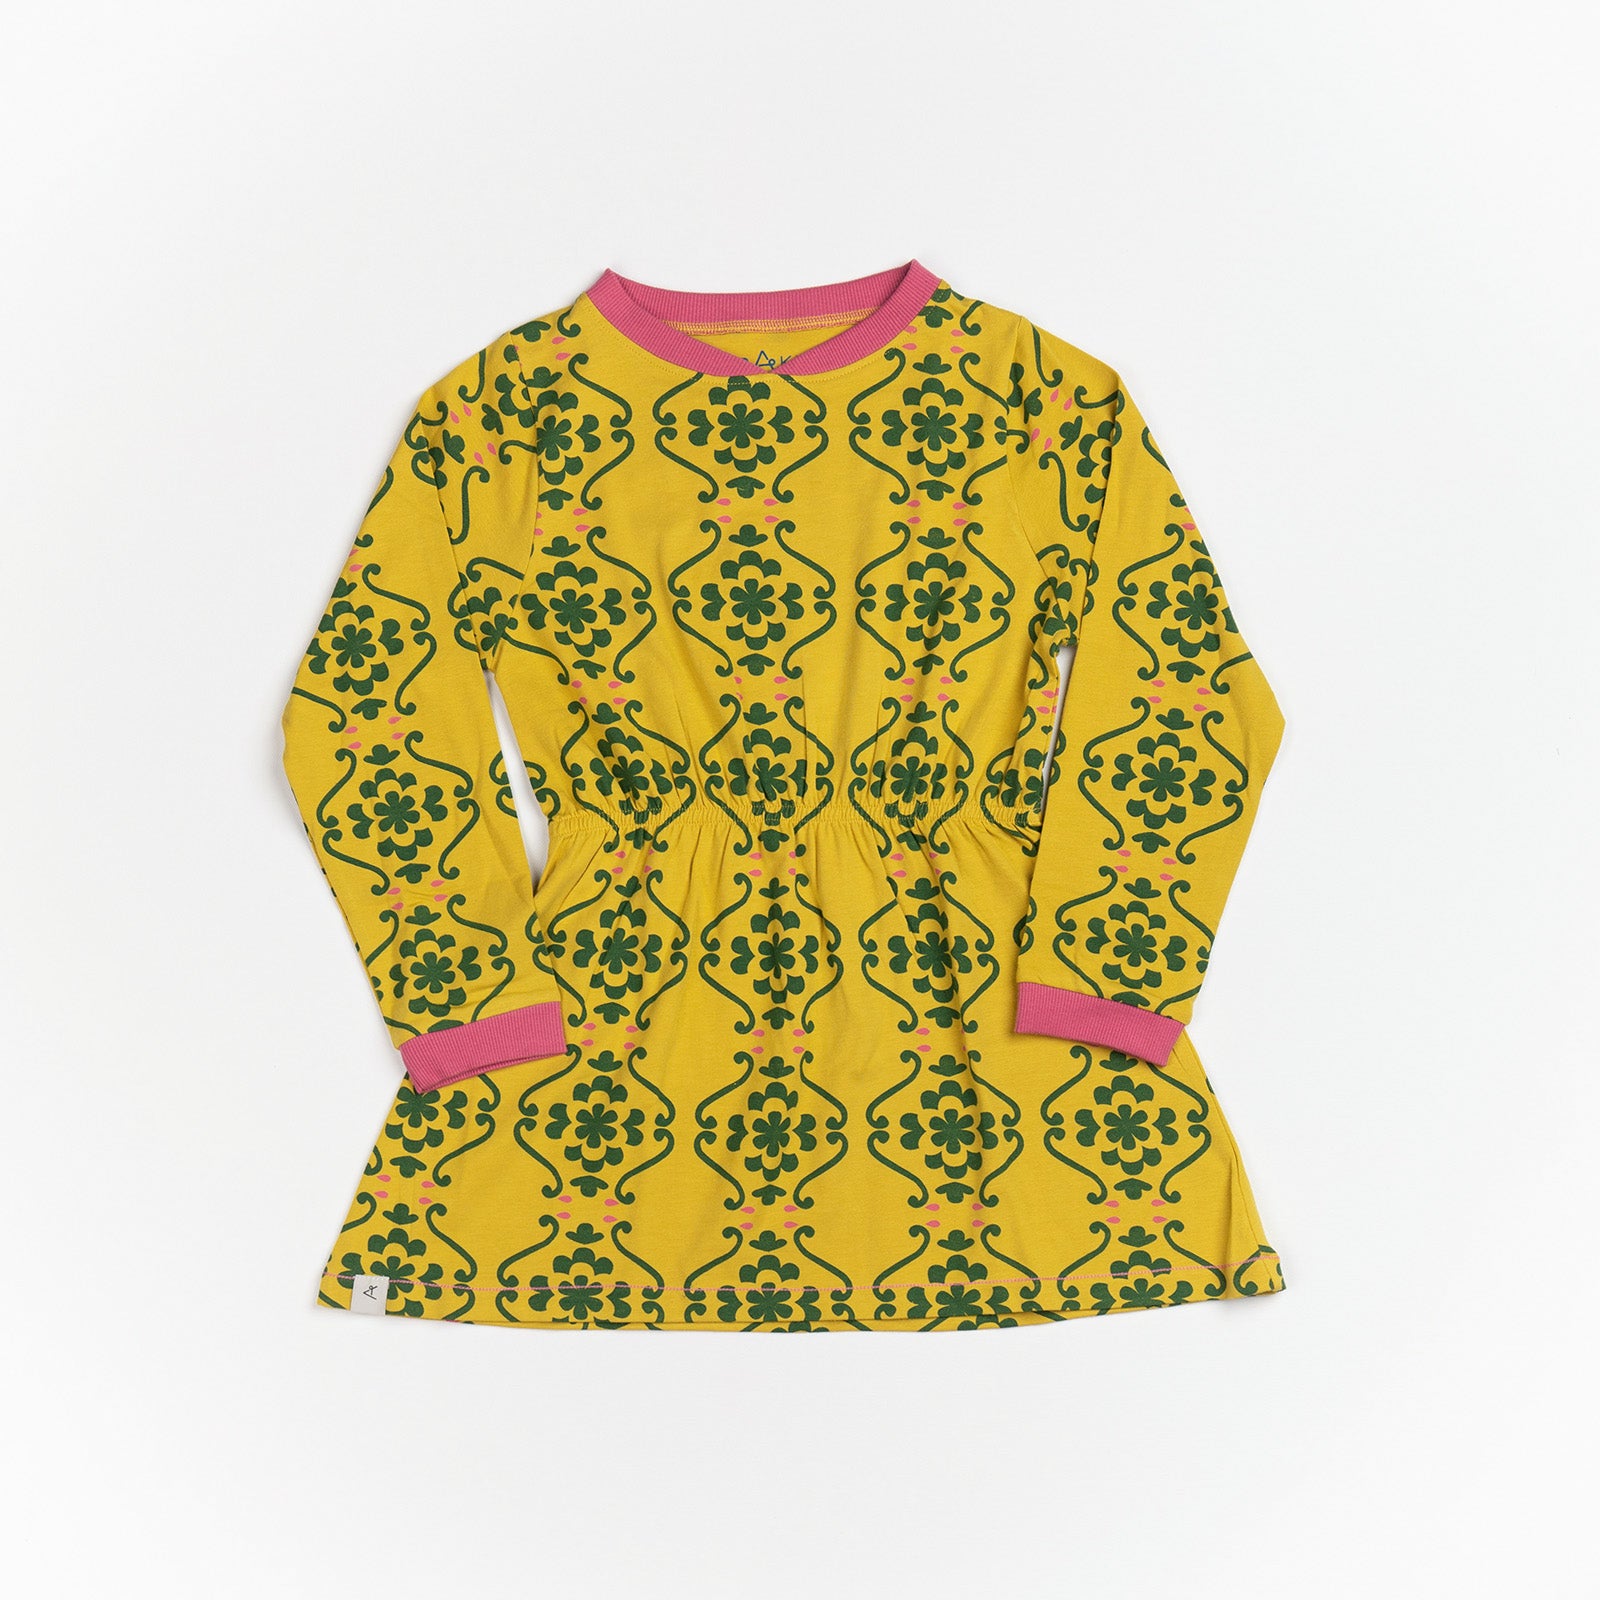 Alba of Denmark - Vigga Dress Ceylon Yellow Nostalgic Flower Tiles